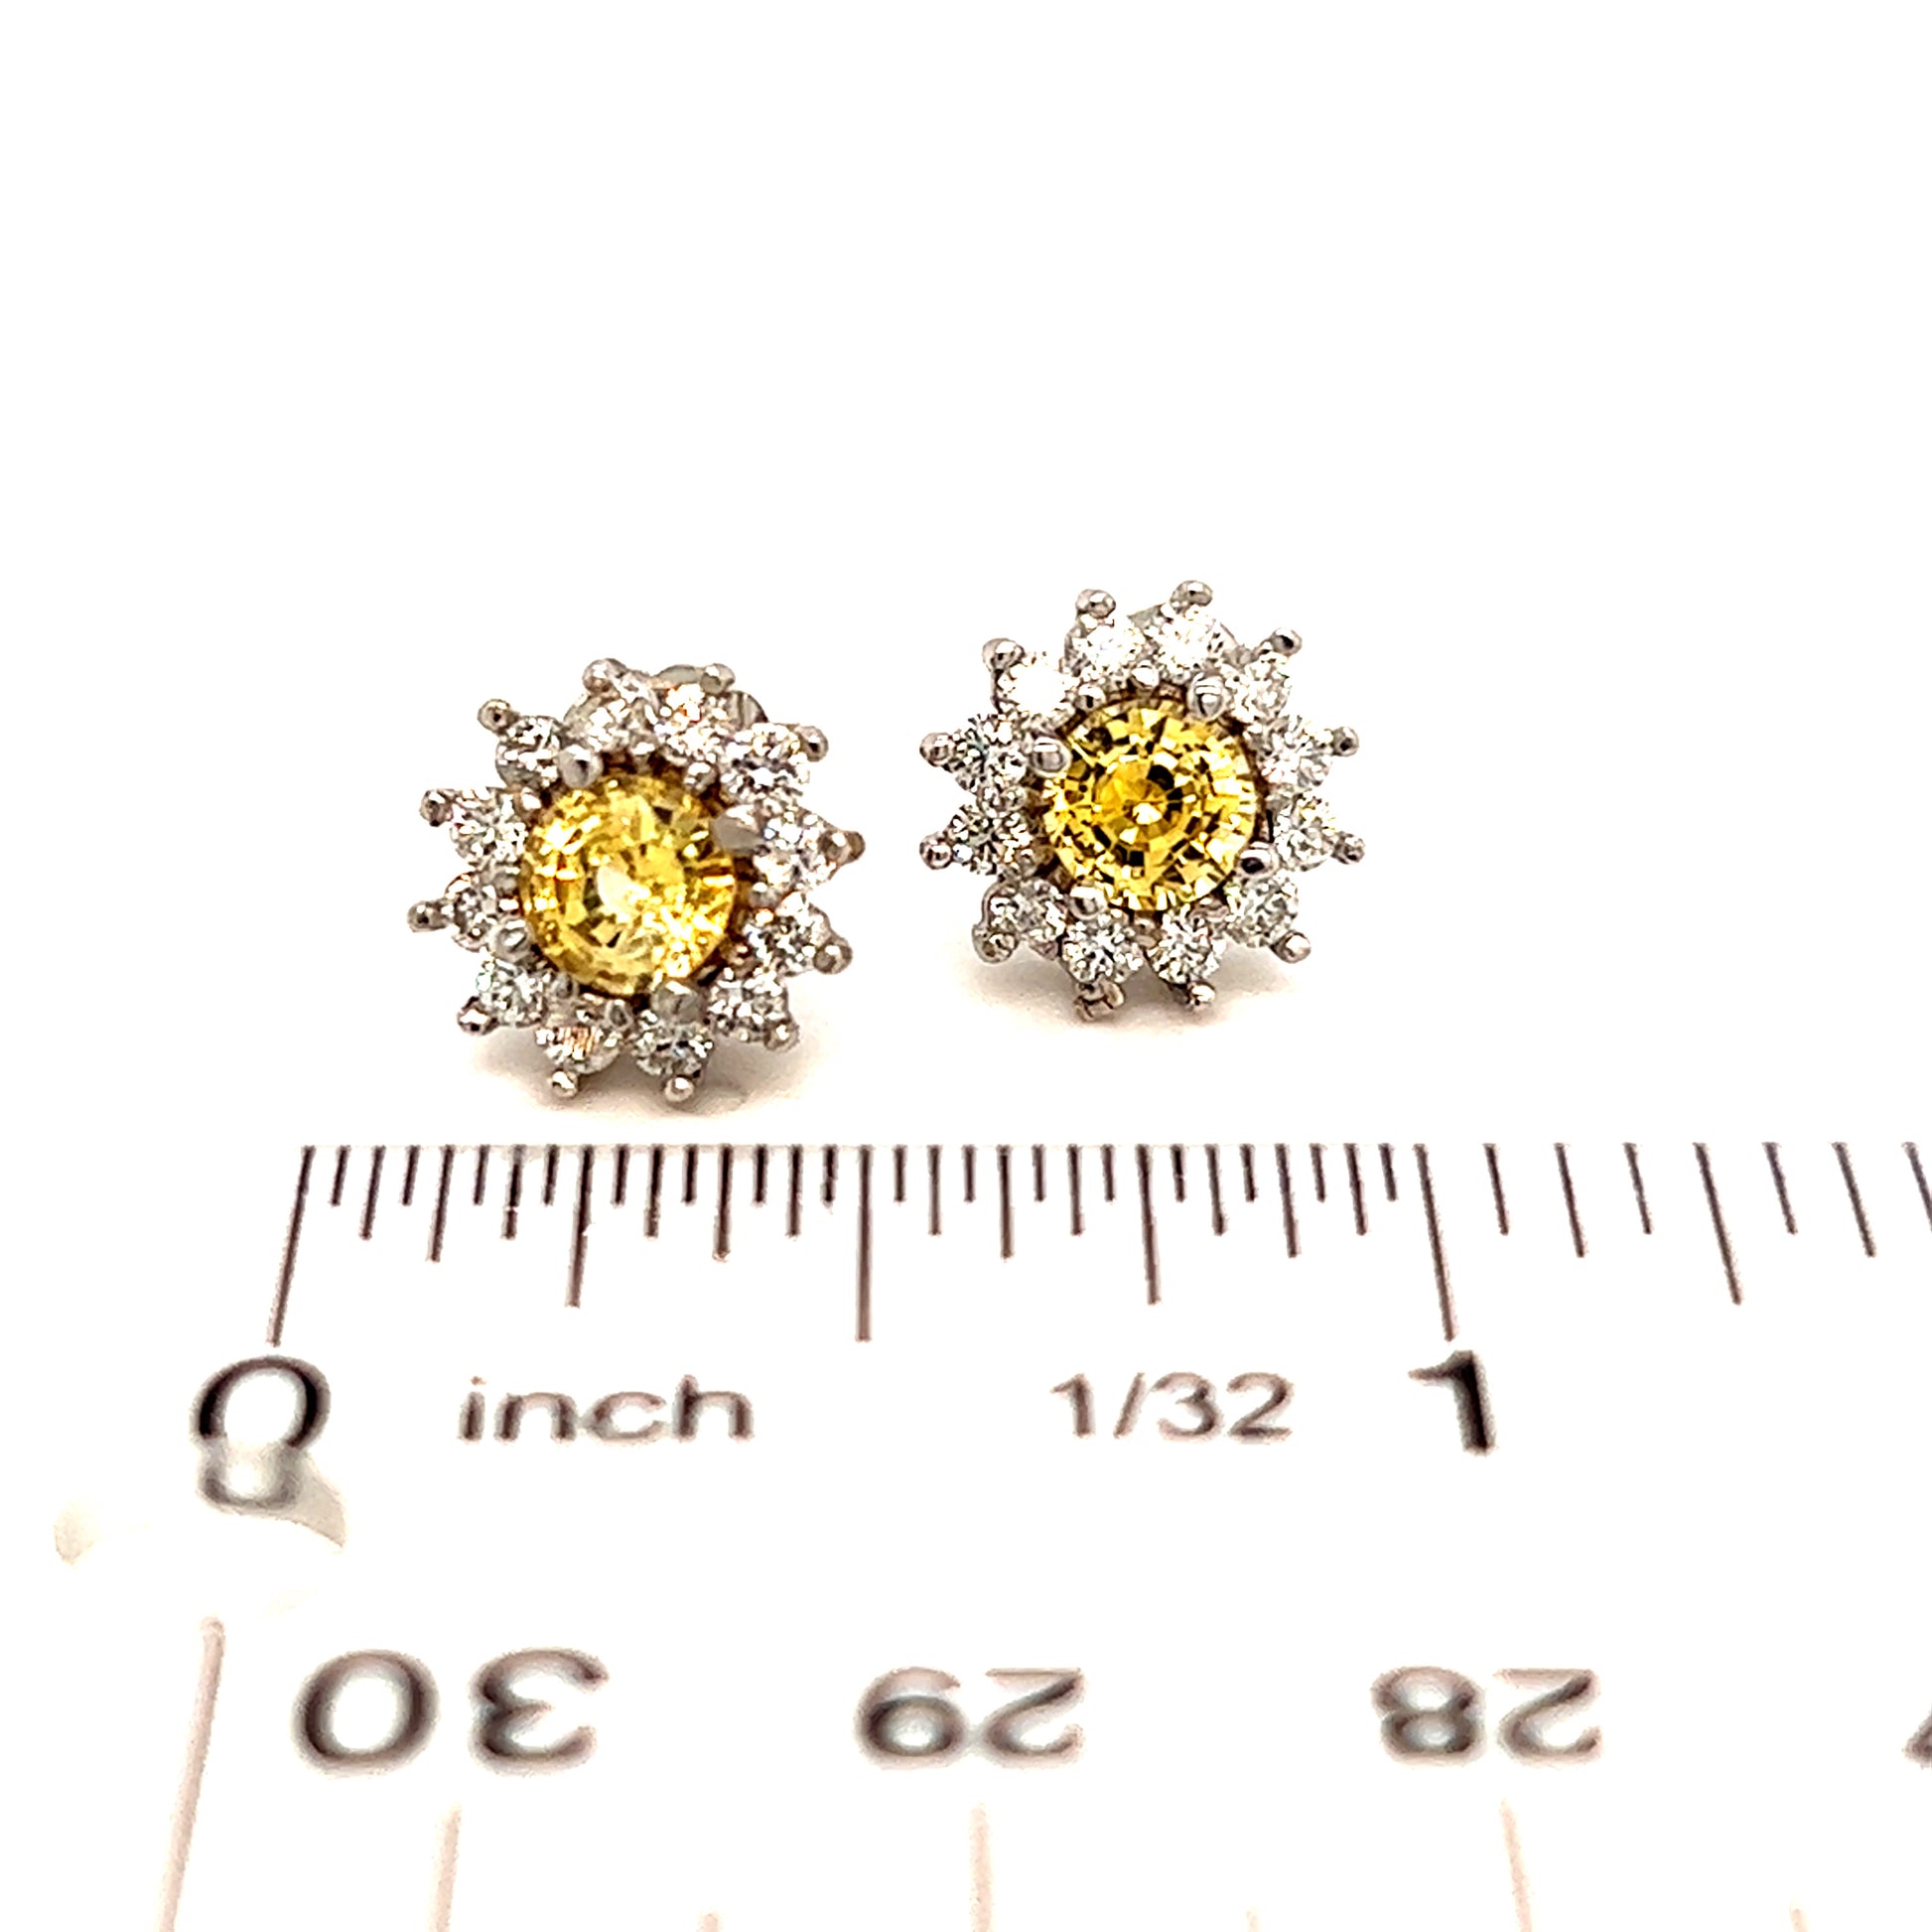 Natural Sapphire Diamond Stud Earrings 14k Gold 2.91 TCW Certified $4,950 121264 - Certified Fine Jewelry